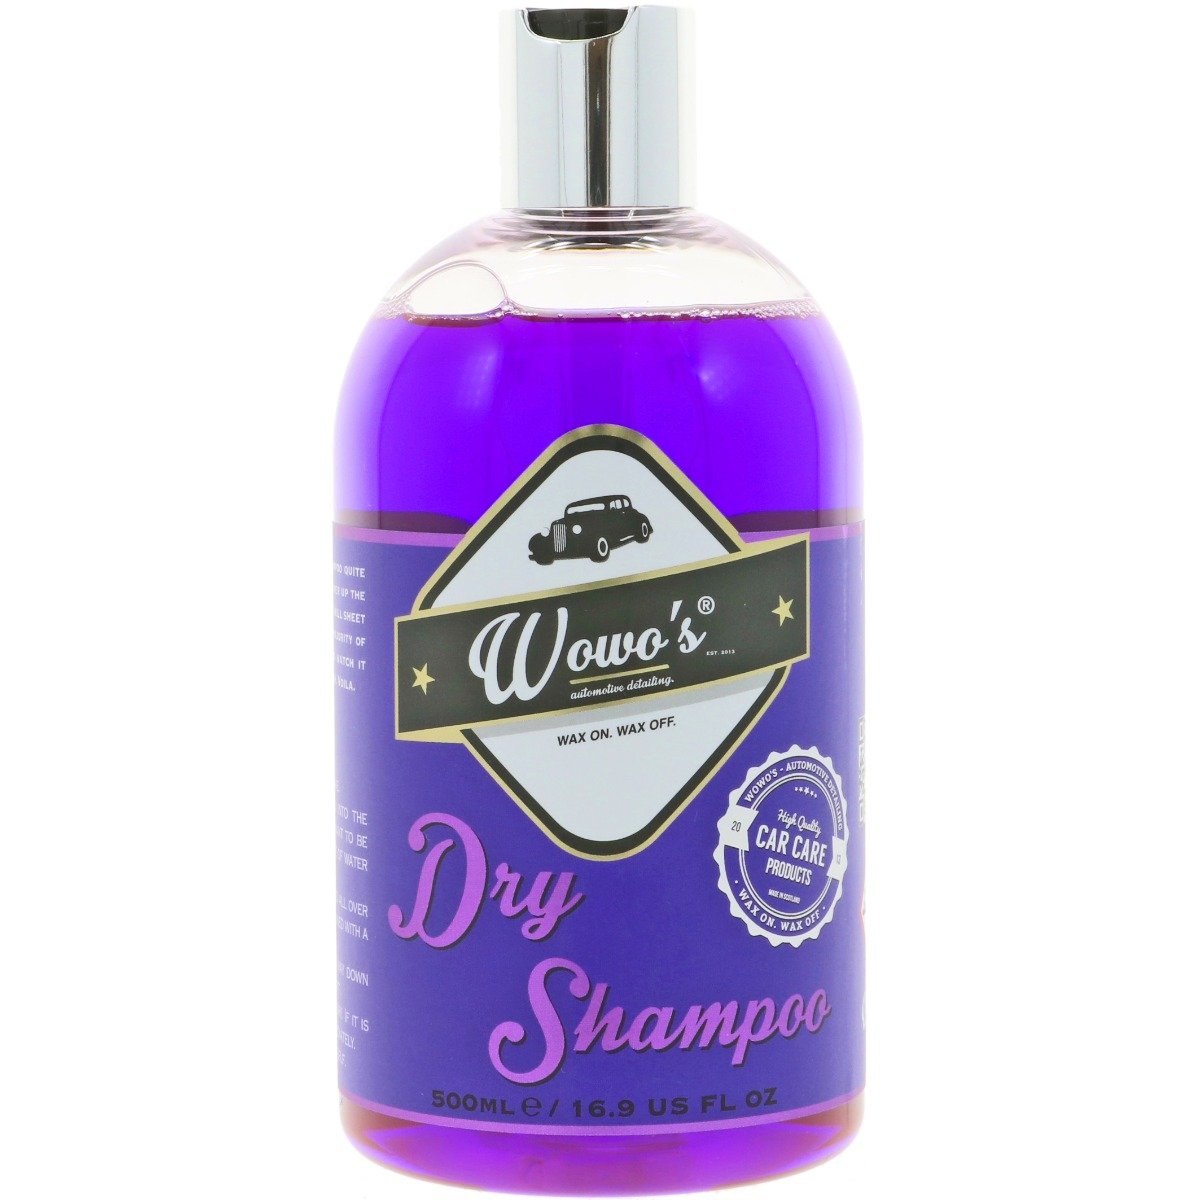 Dry Shampoo - 500ml